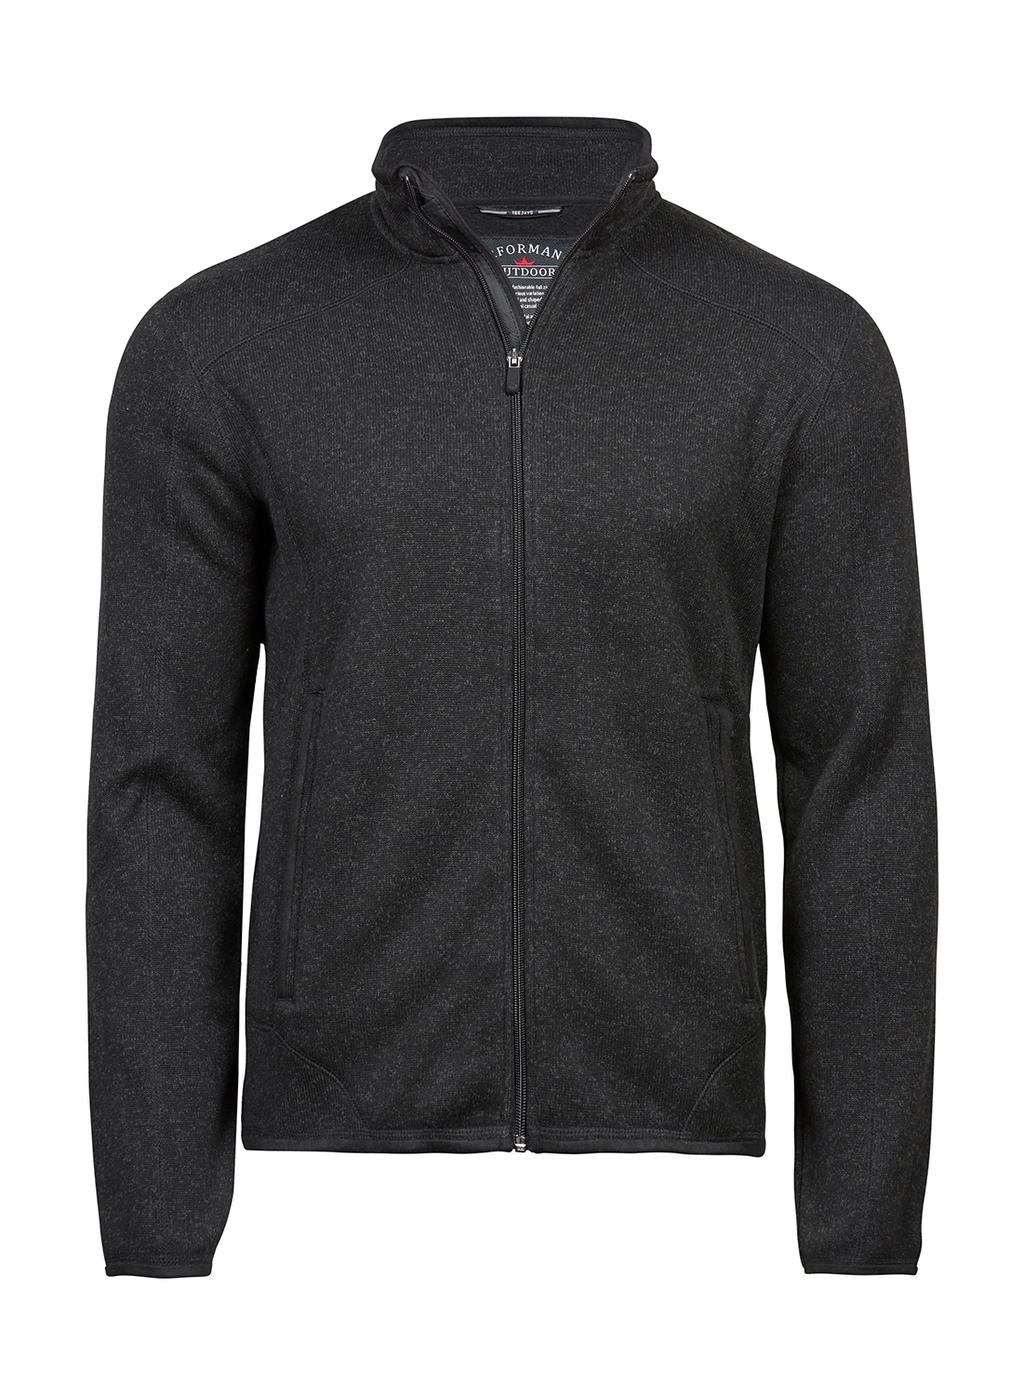 Outdoor Fleece Jacket zum Besticken und Bedrucken in der Farbe Black mit Ihren Logo, Schriftzug oder Motiv.